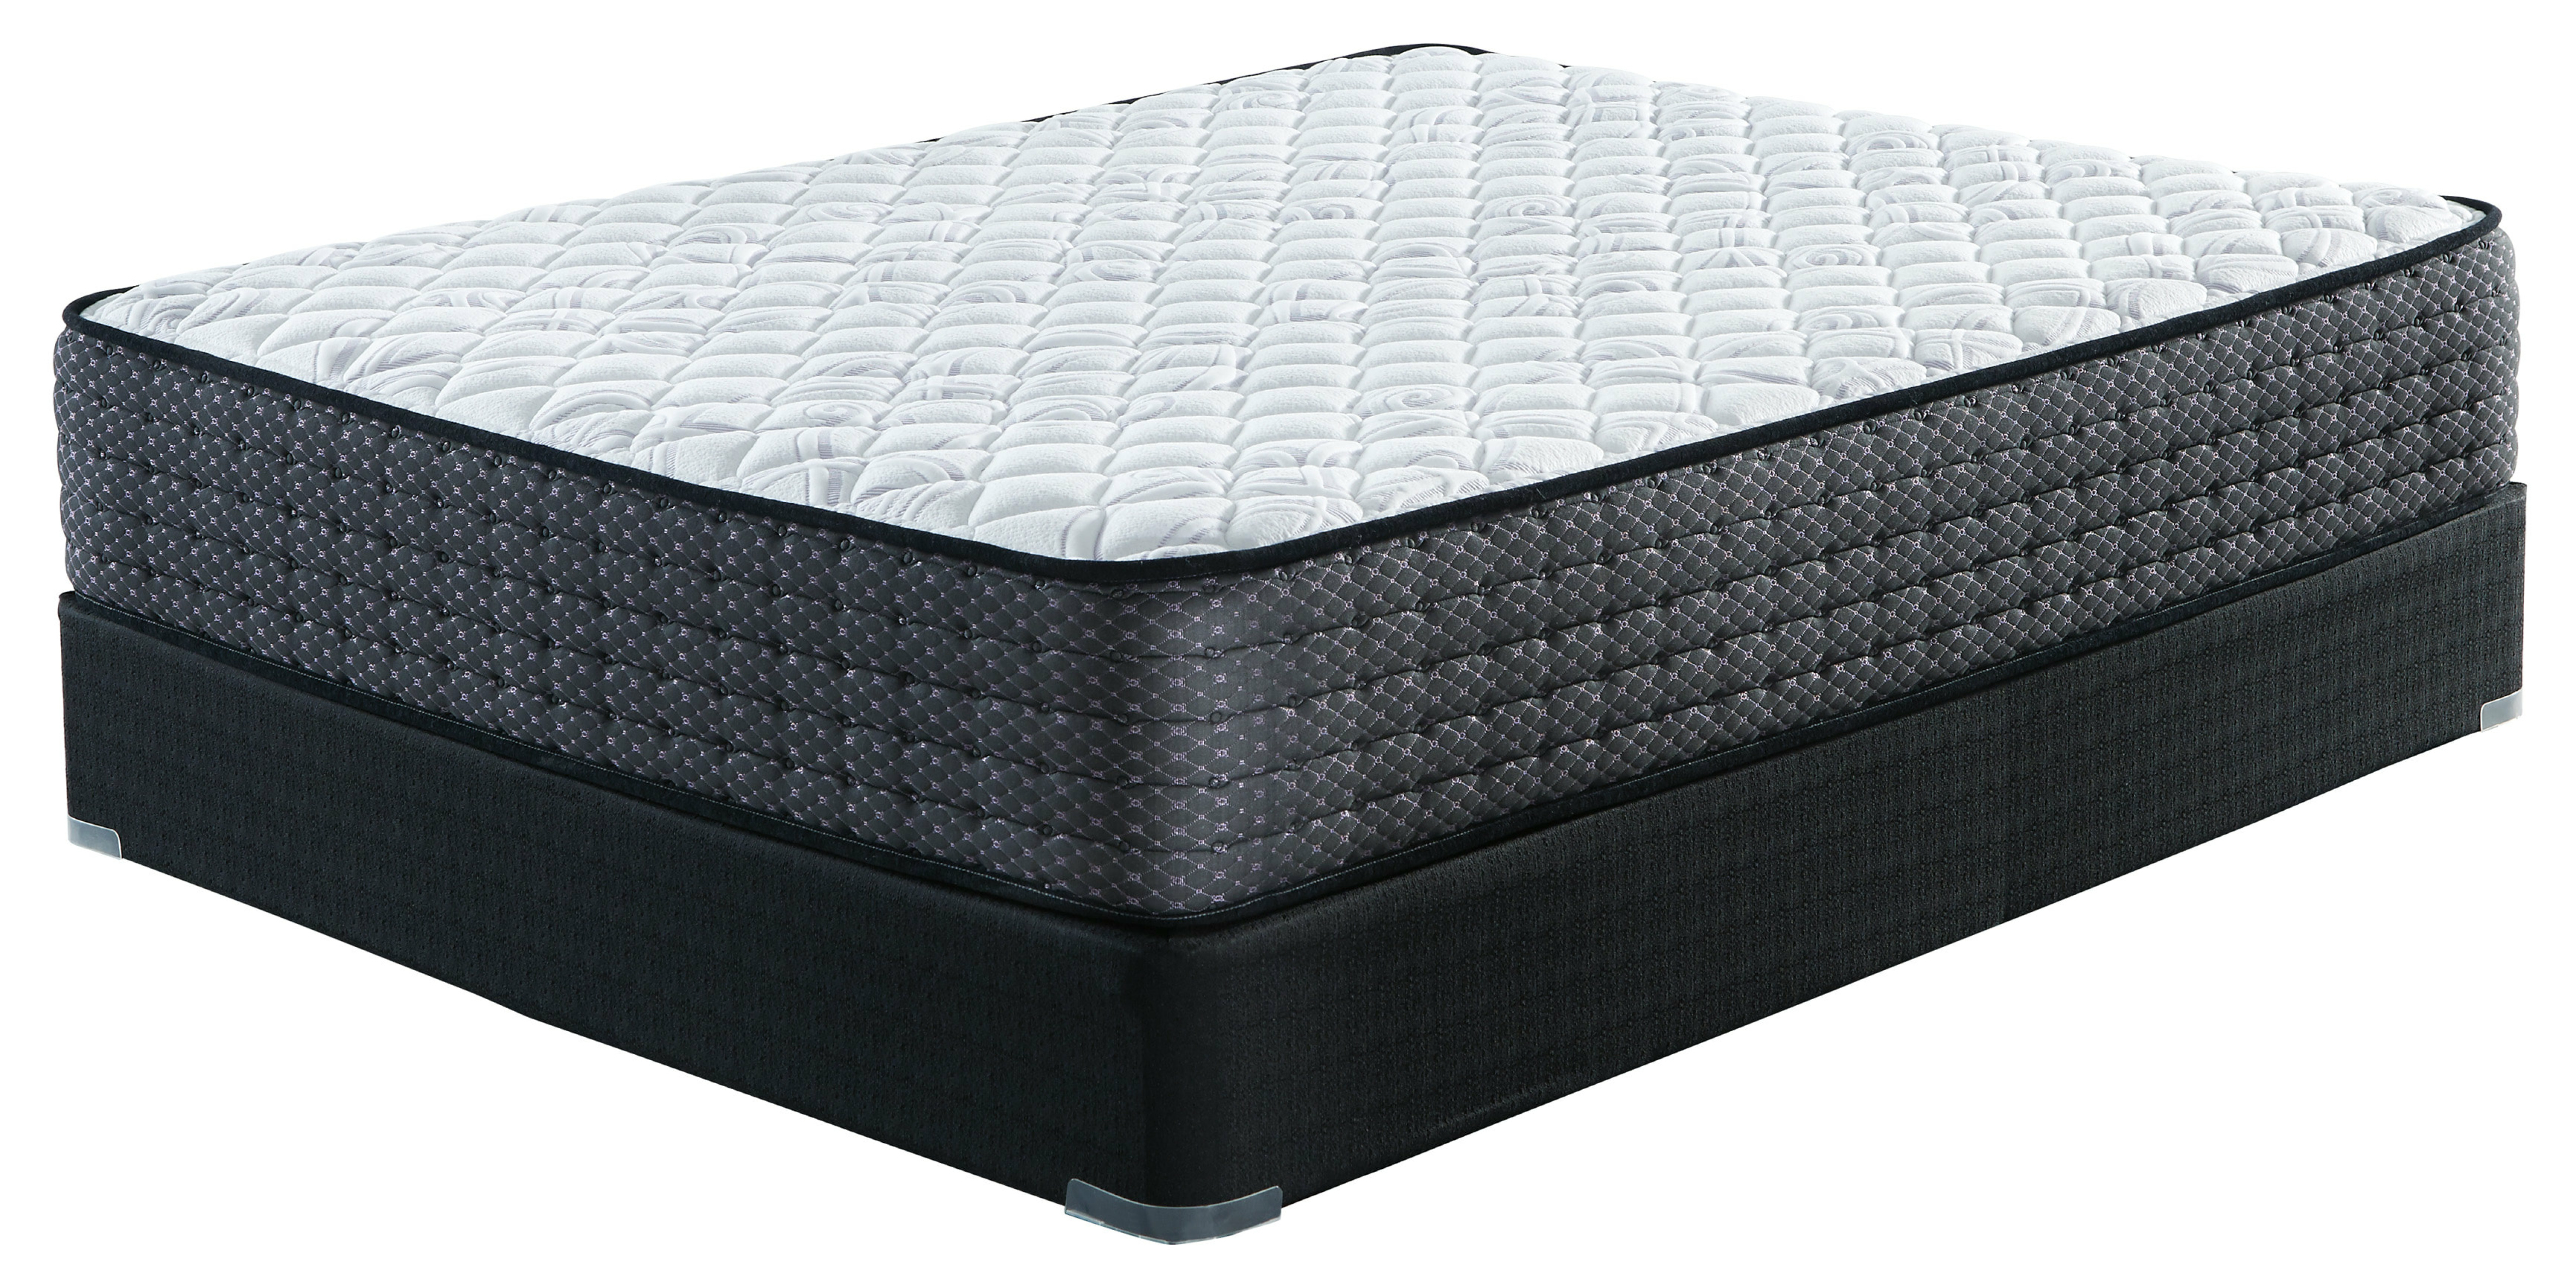 sierra sleep by ashley limited edition plush mattress